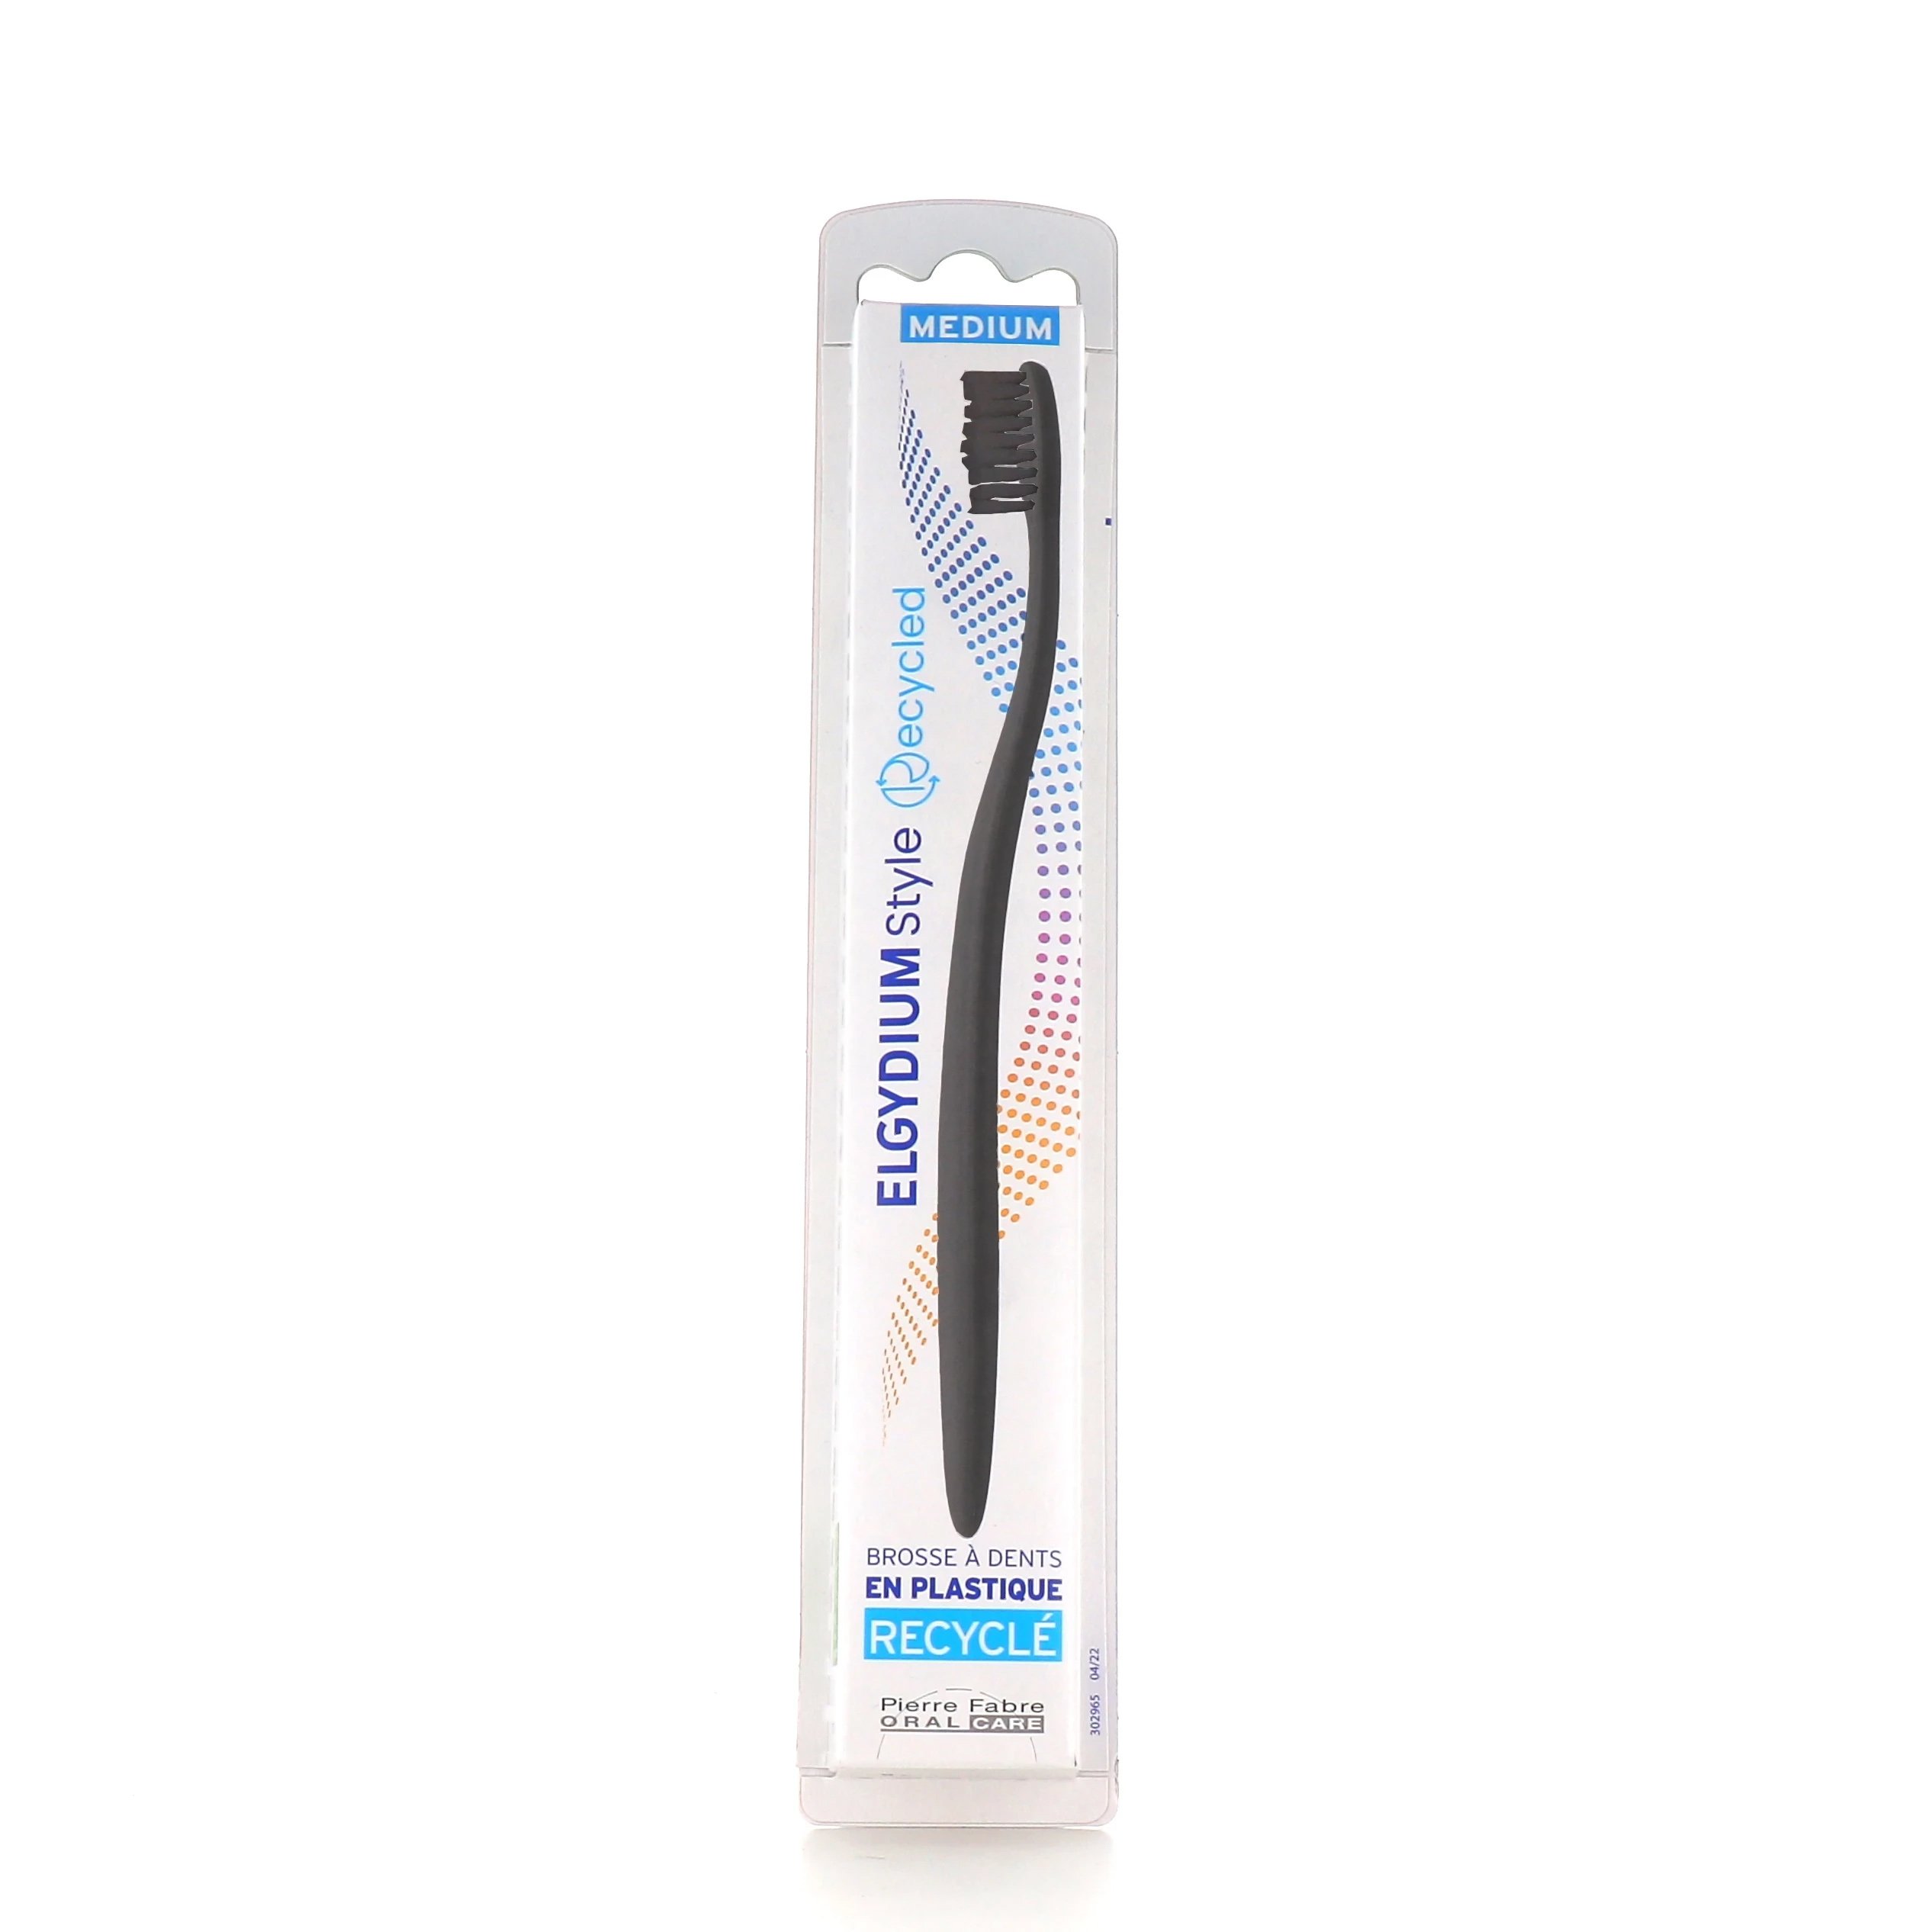 Elgydium Style Recycled Toothbrush Medium Χειροκίνητη Οδοντόβουρτσα Κατασκευασμένη Από Ανακυκλώσιμα Υλικά 1 Τεμάχιο – Μαύρο